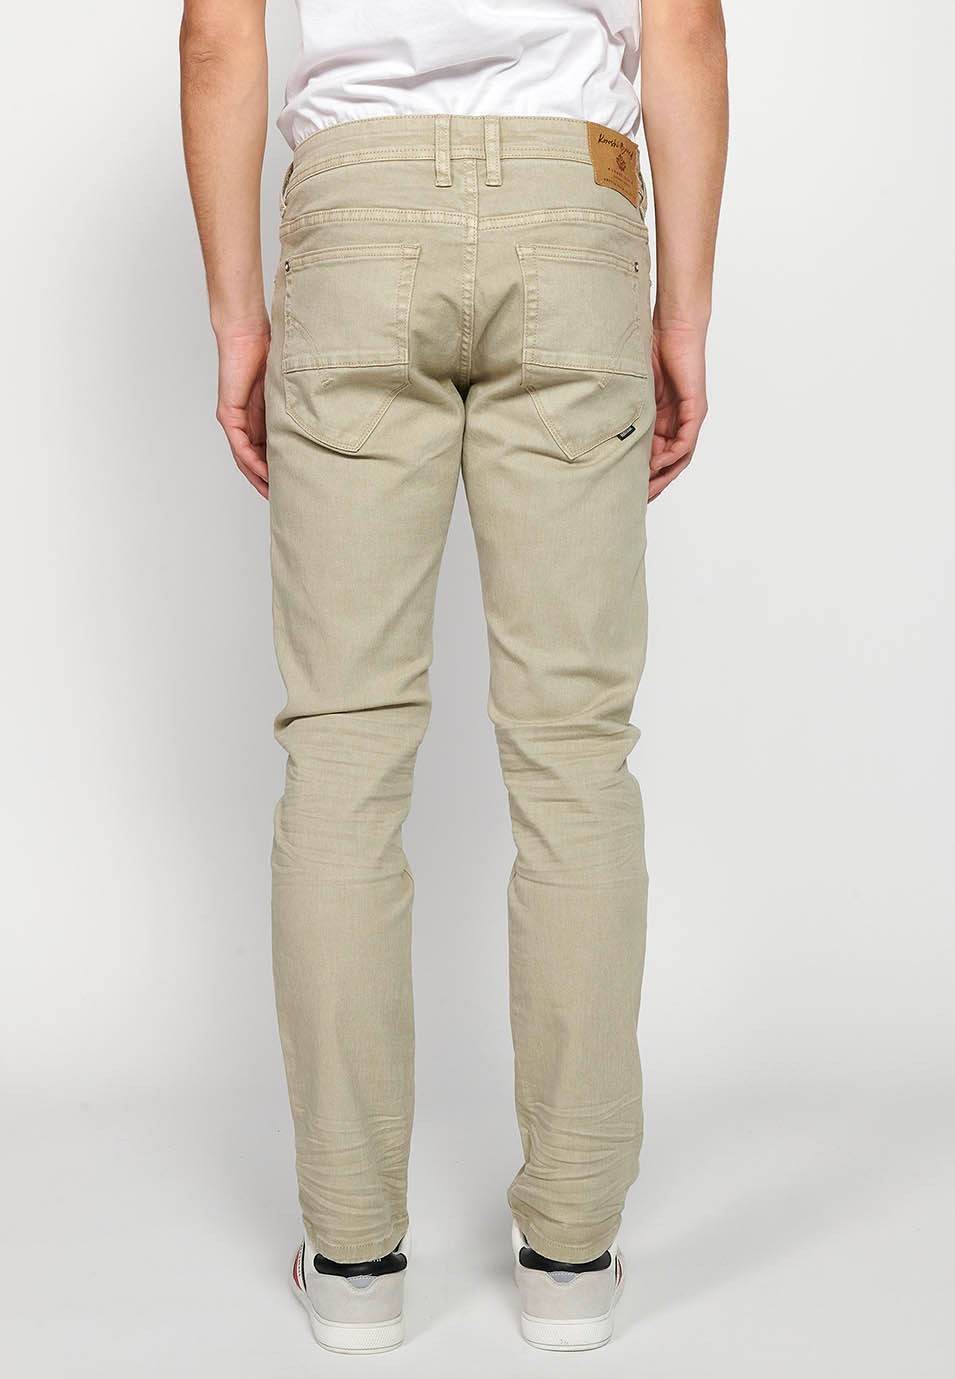 Pantalon long droit coupe classique avec fermeture sur le devant avec fermeture éclair et bouton avec cinq poches, une poche en couleur pierre pour homme 3